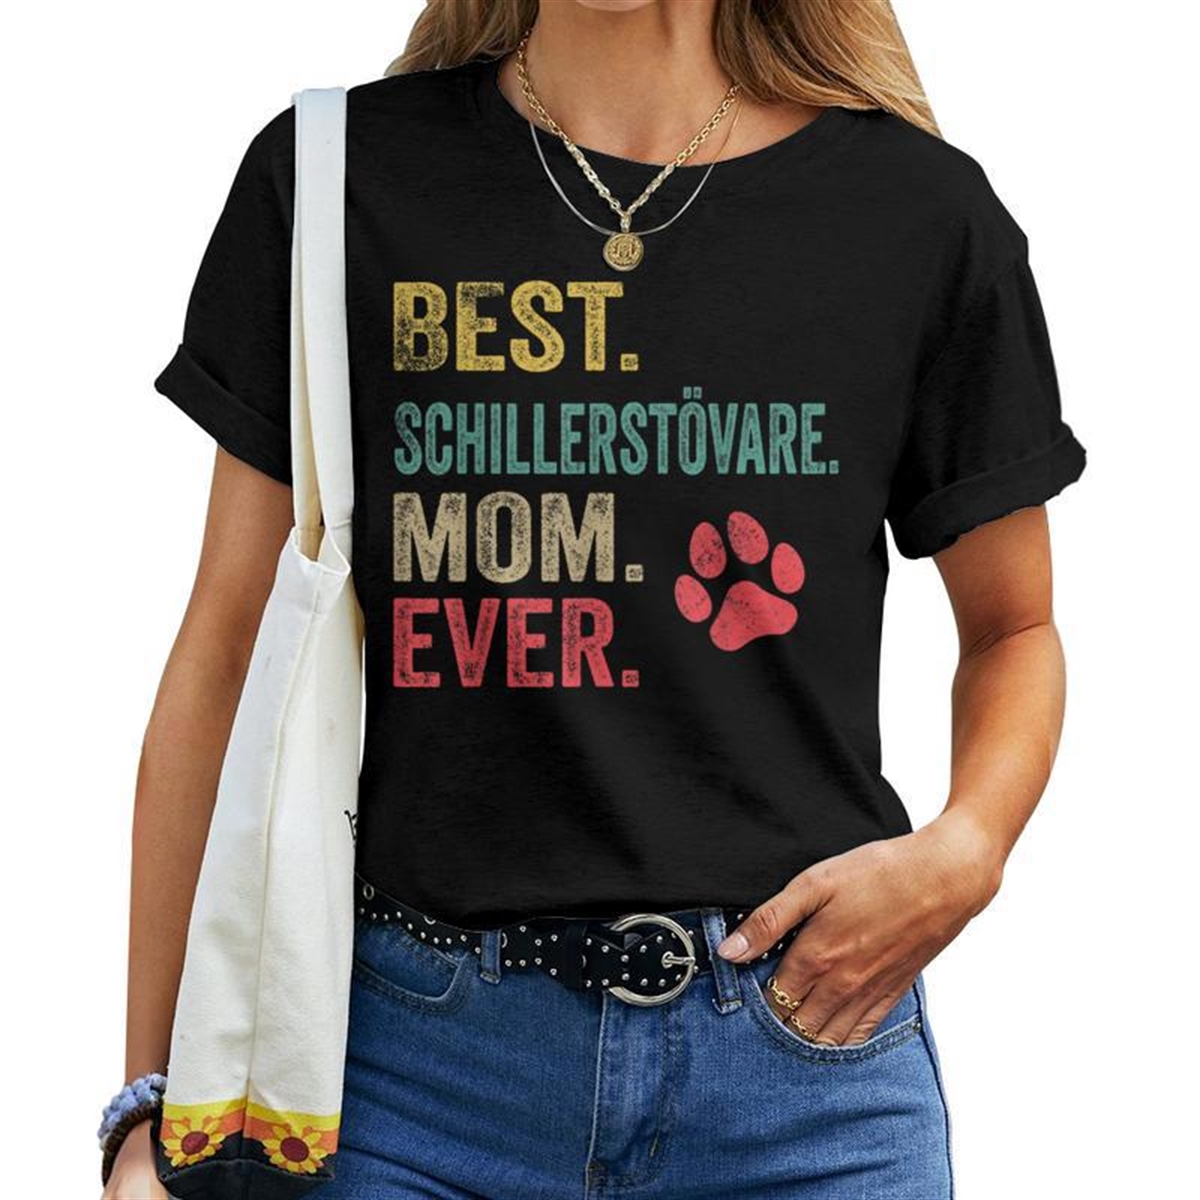 Best Schillerstvare Mom Ever Vintage Mother Dog Lover Women T-shirt